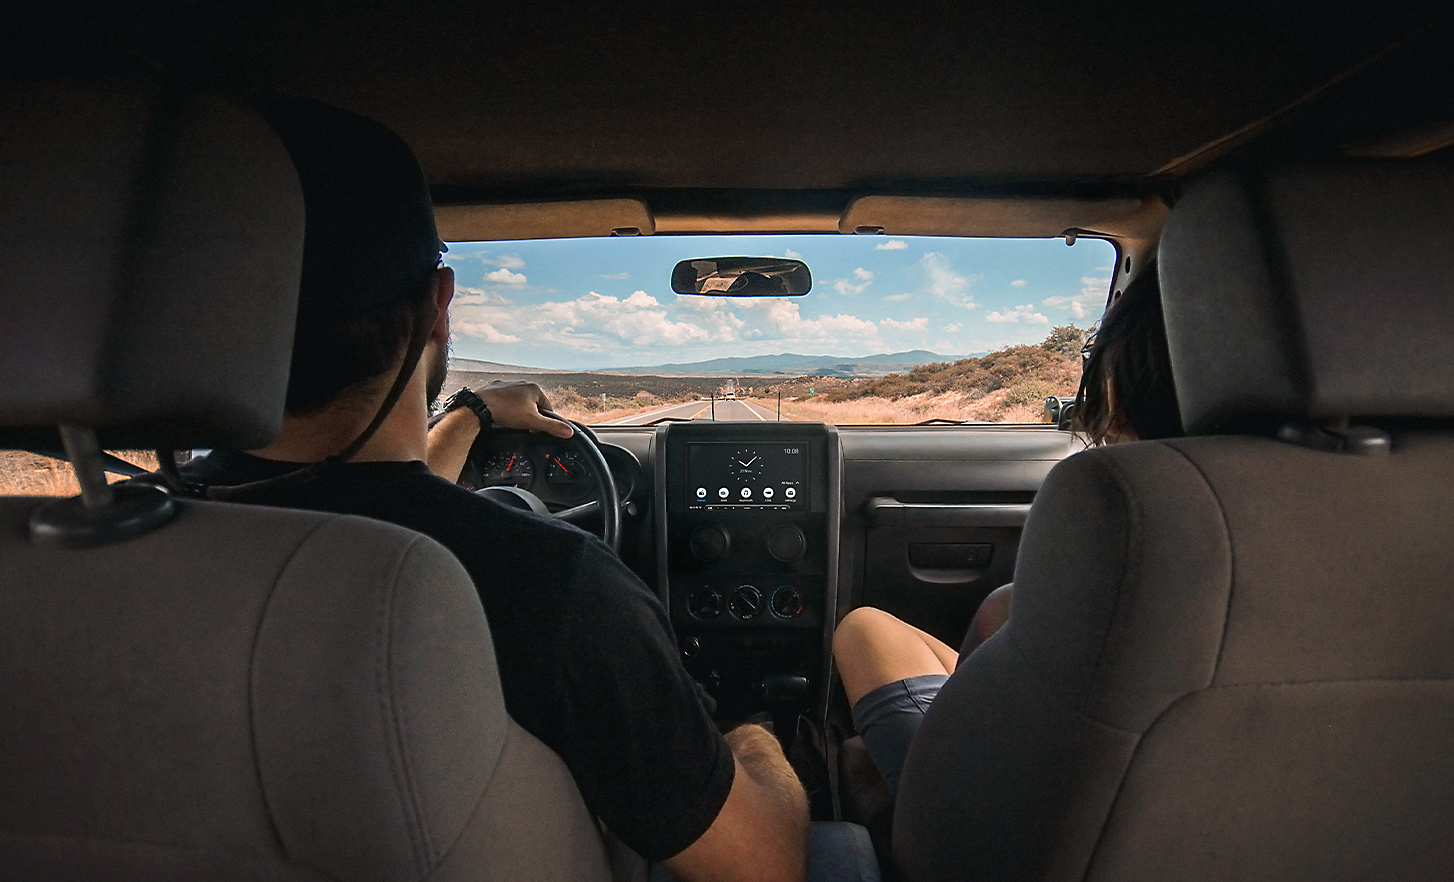 Bild von zwei Personen, die durch eine wüstenähnliche Landschaft fahren, mit dem XAV-AX6050 im Armaturenbrett